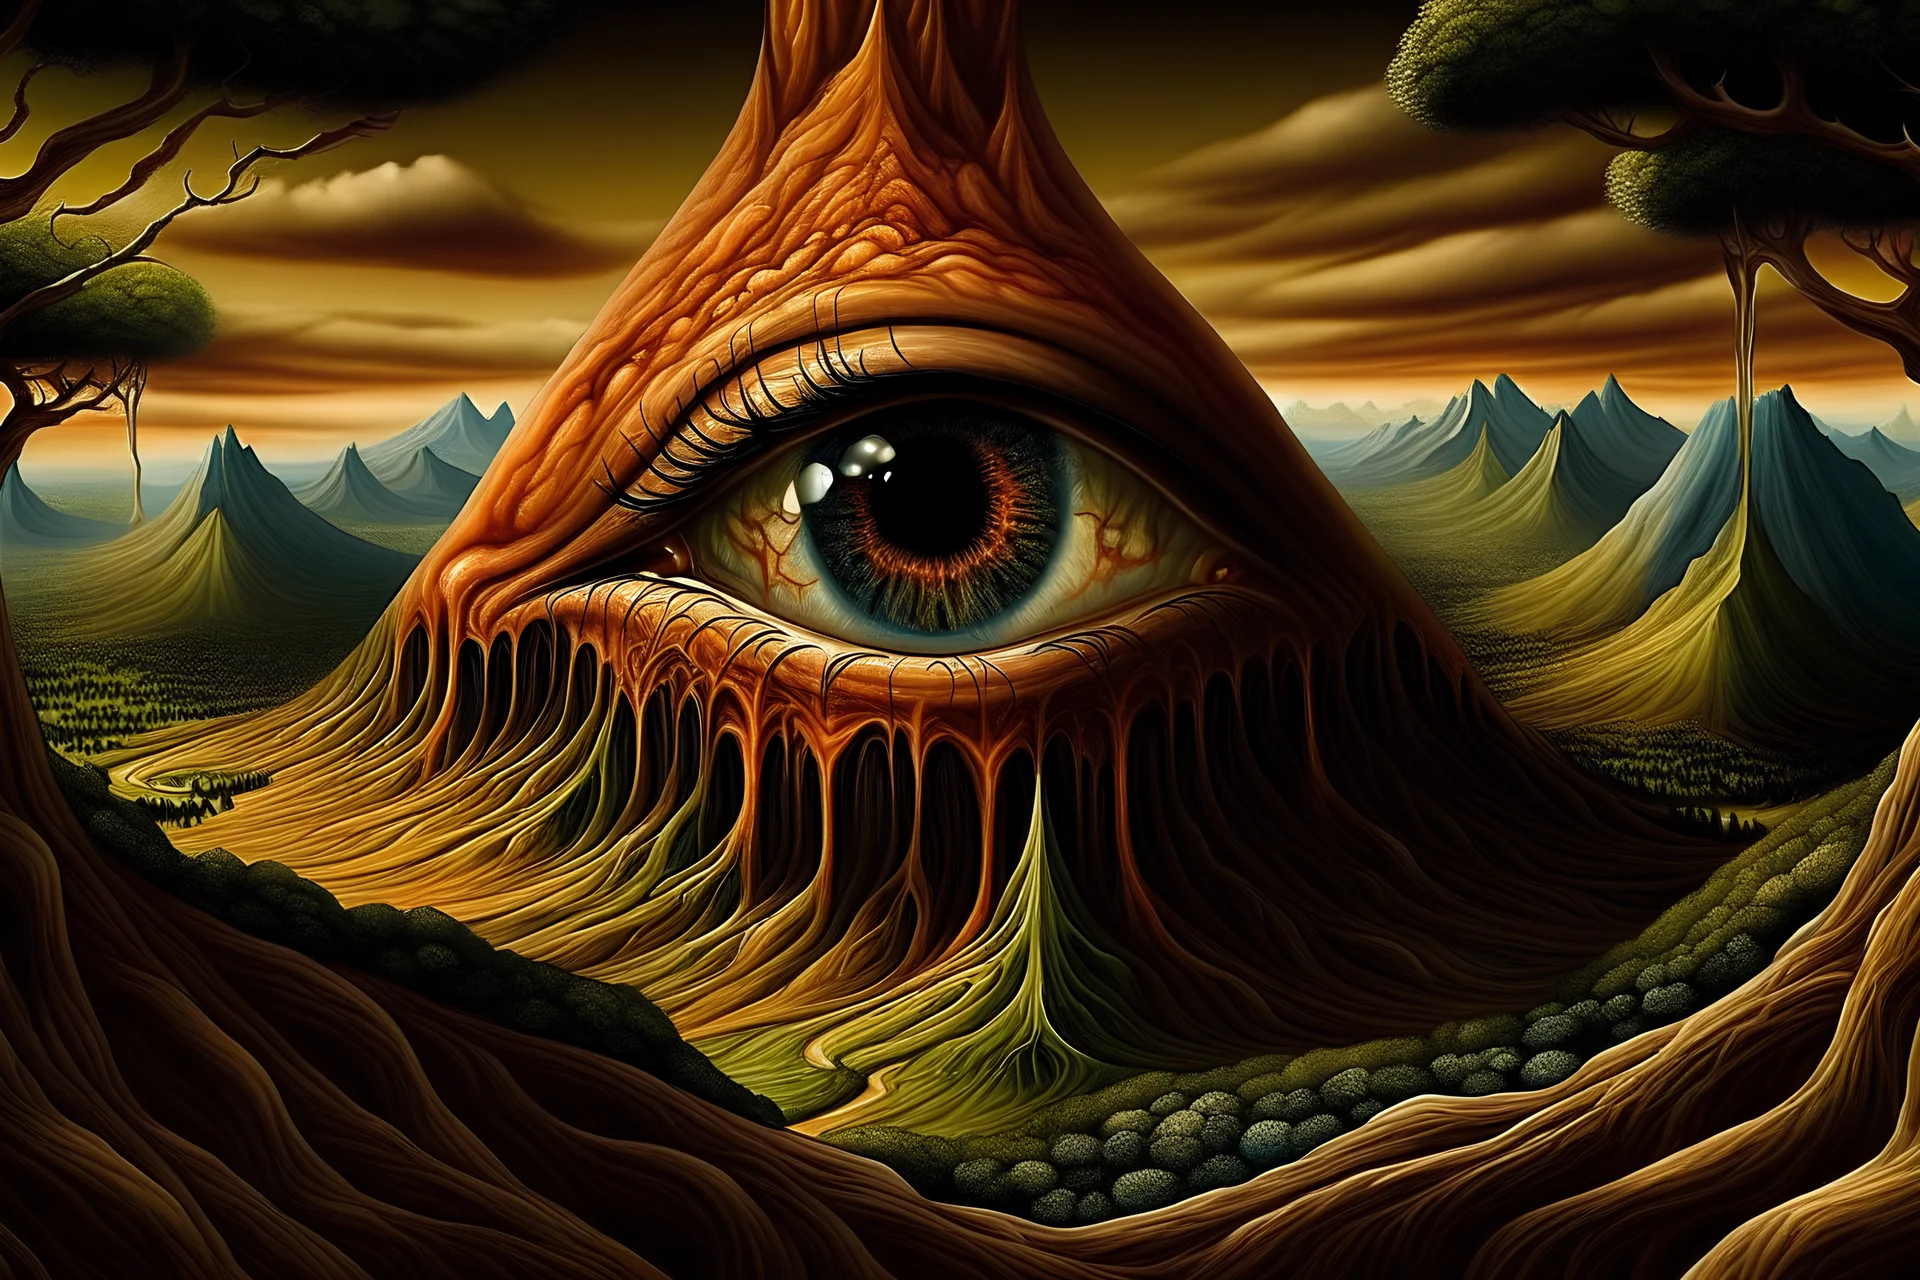 the eye of mount doom